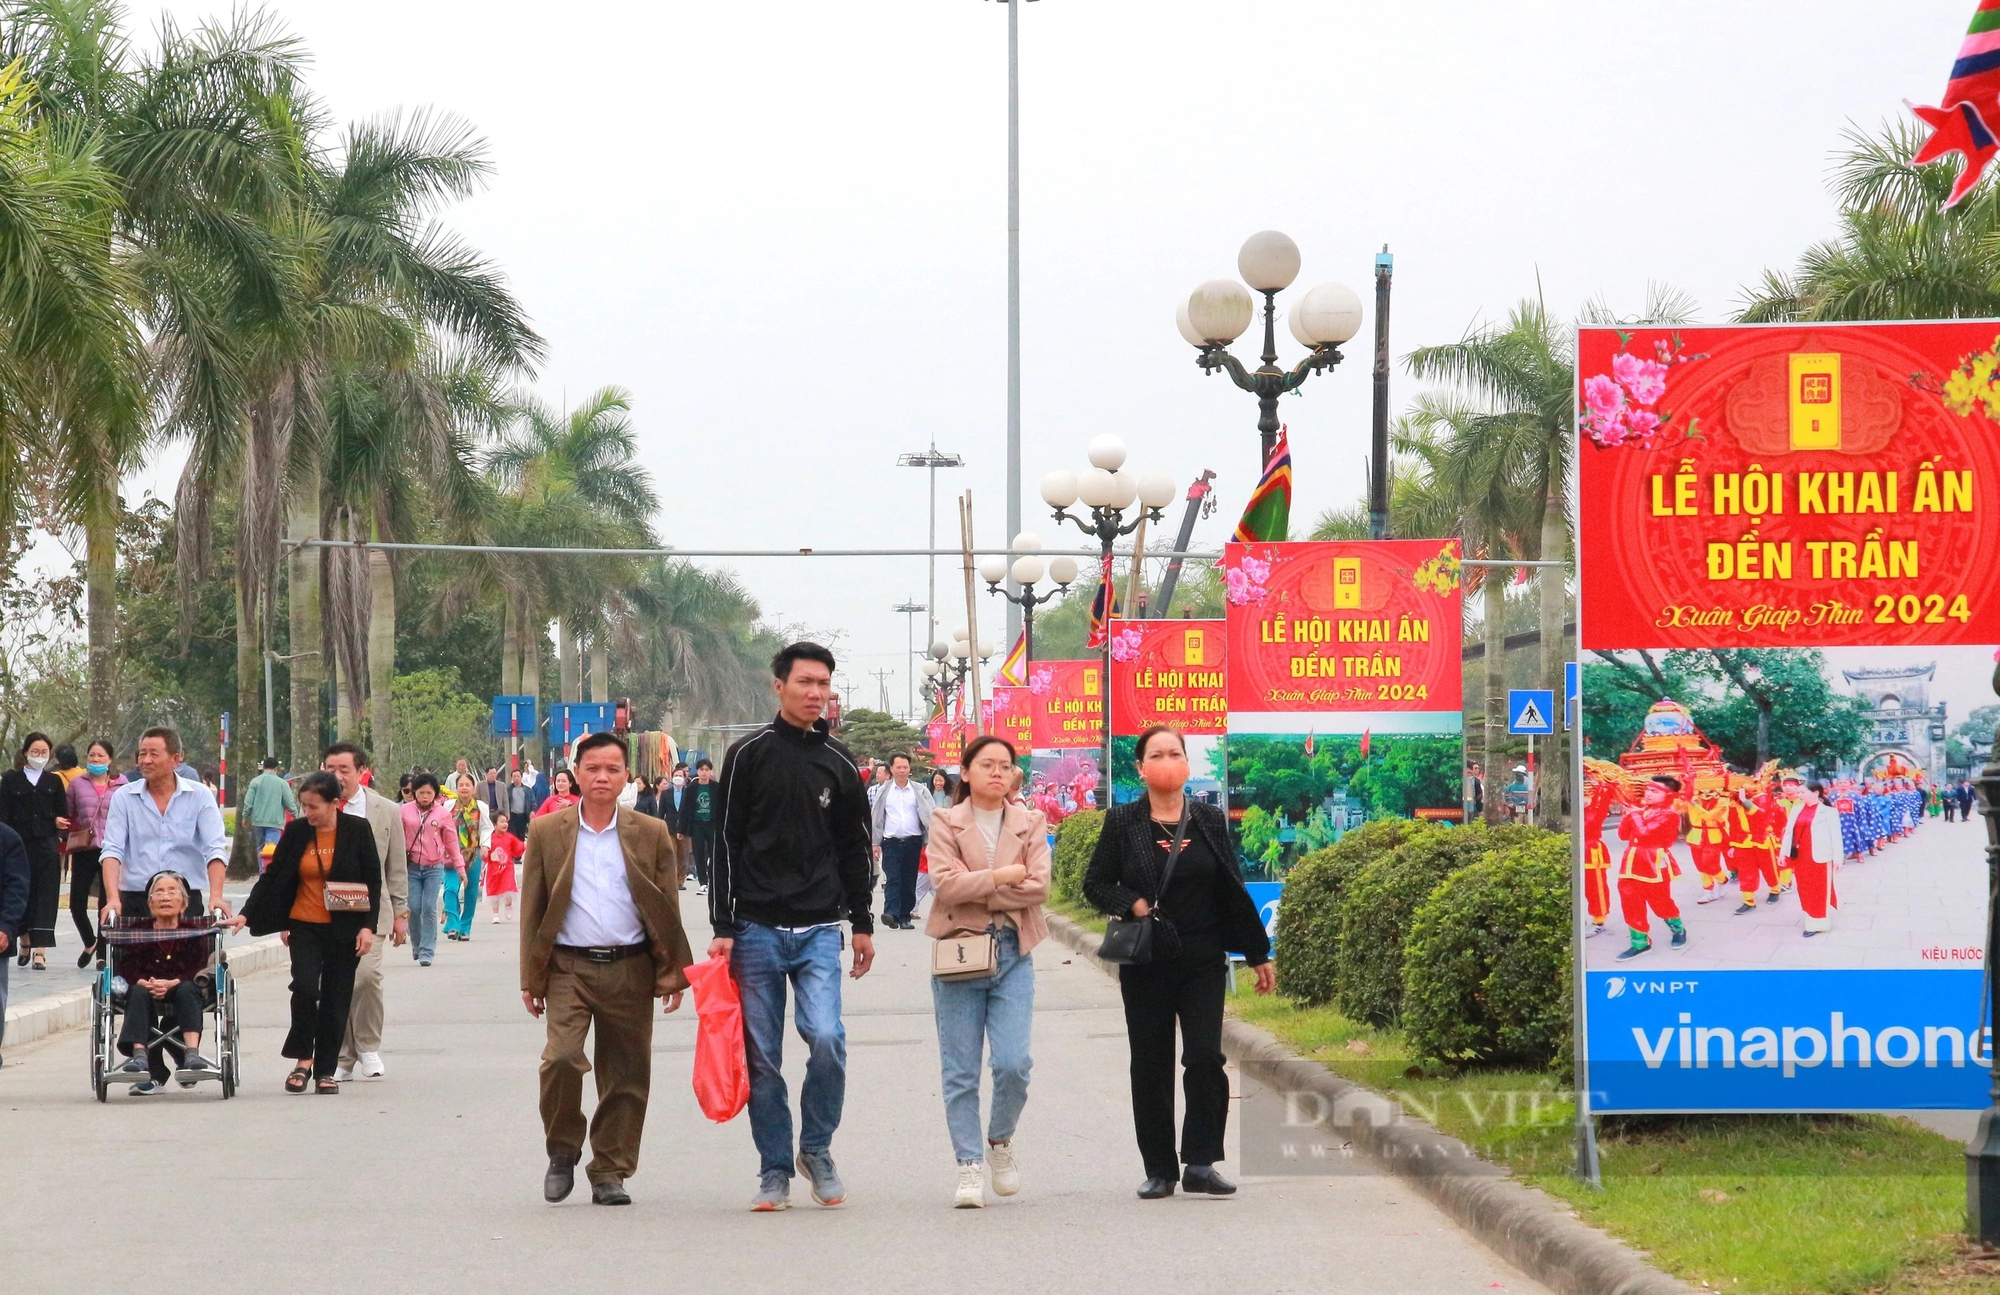 Hàng vạn người thập phương nườm nượp đổ về Đền Trần ở Nam Định dù chưa đến ngày chính lễ- Ảnh 2.